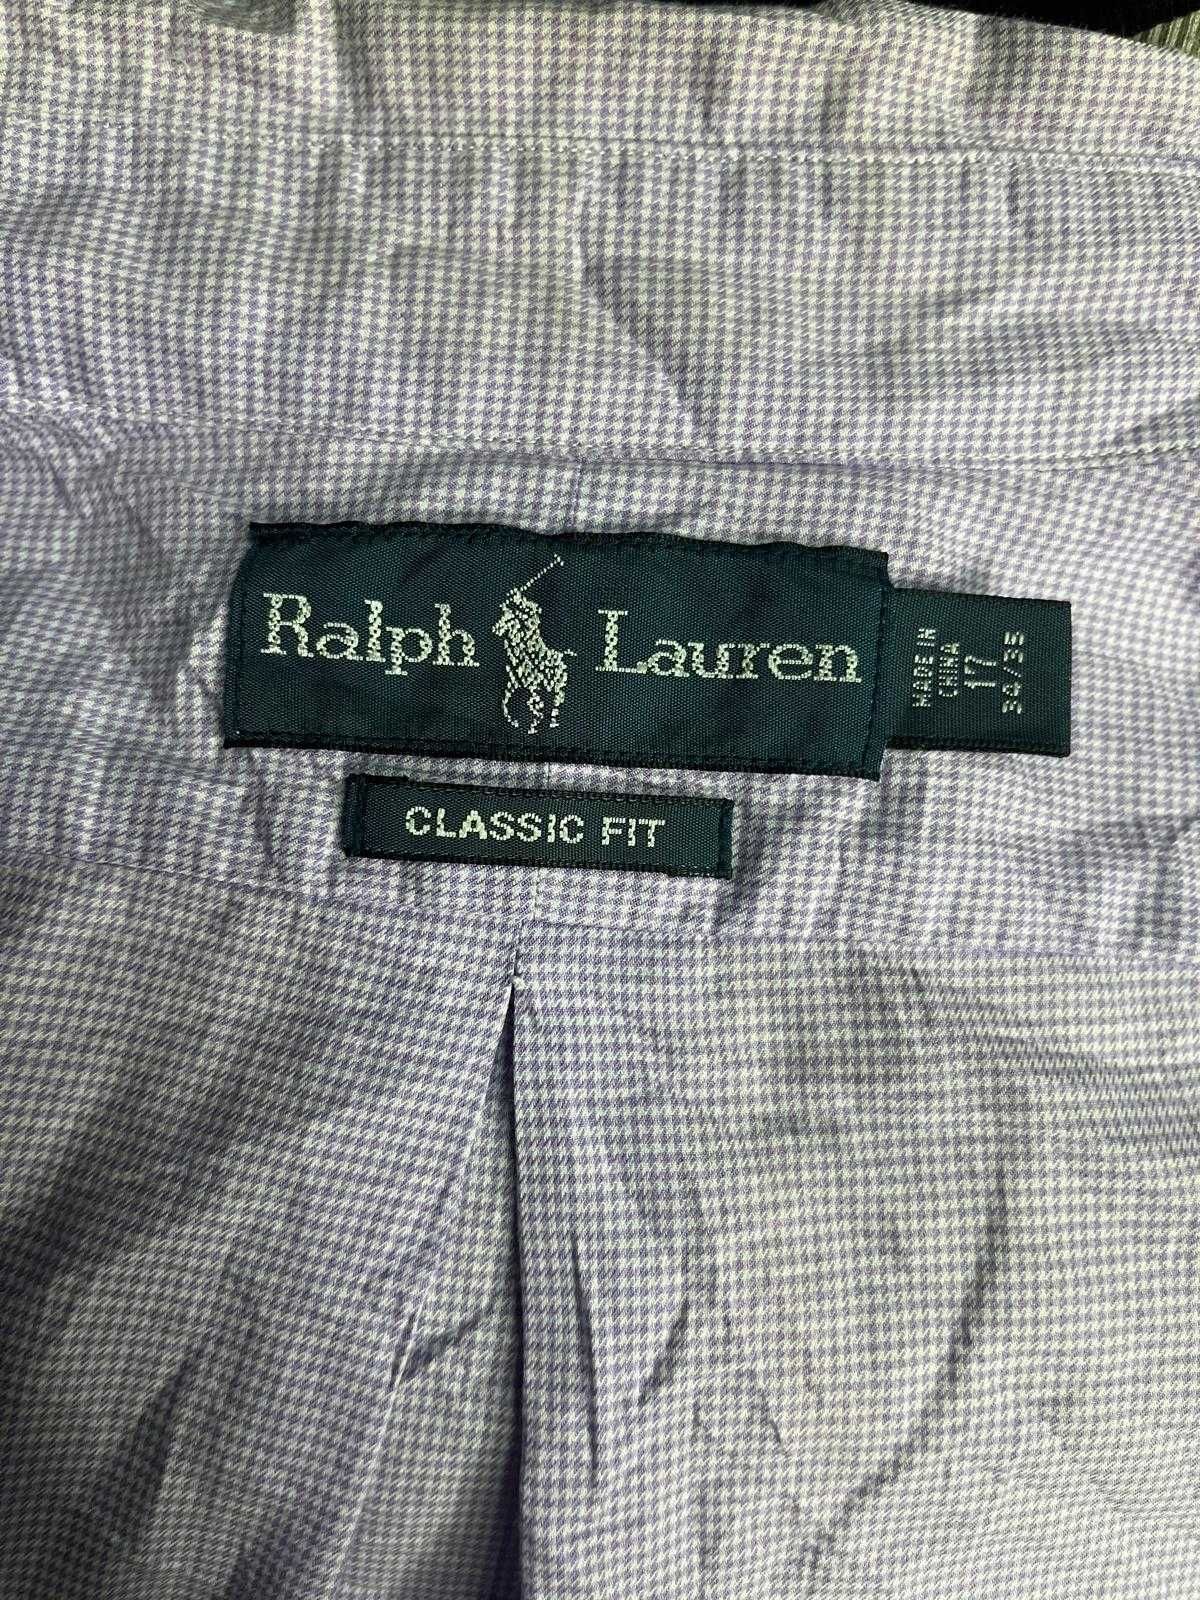 Camisa Roxa, Ralph Lauren.